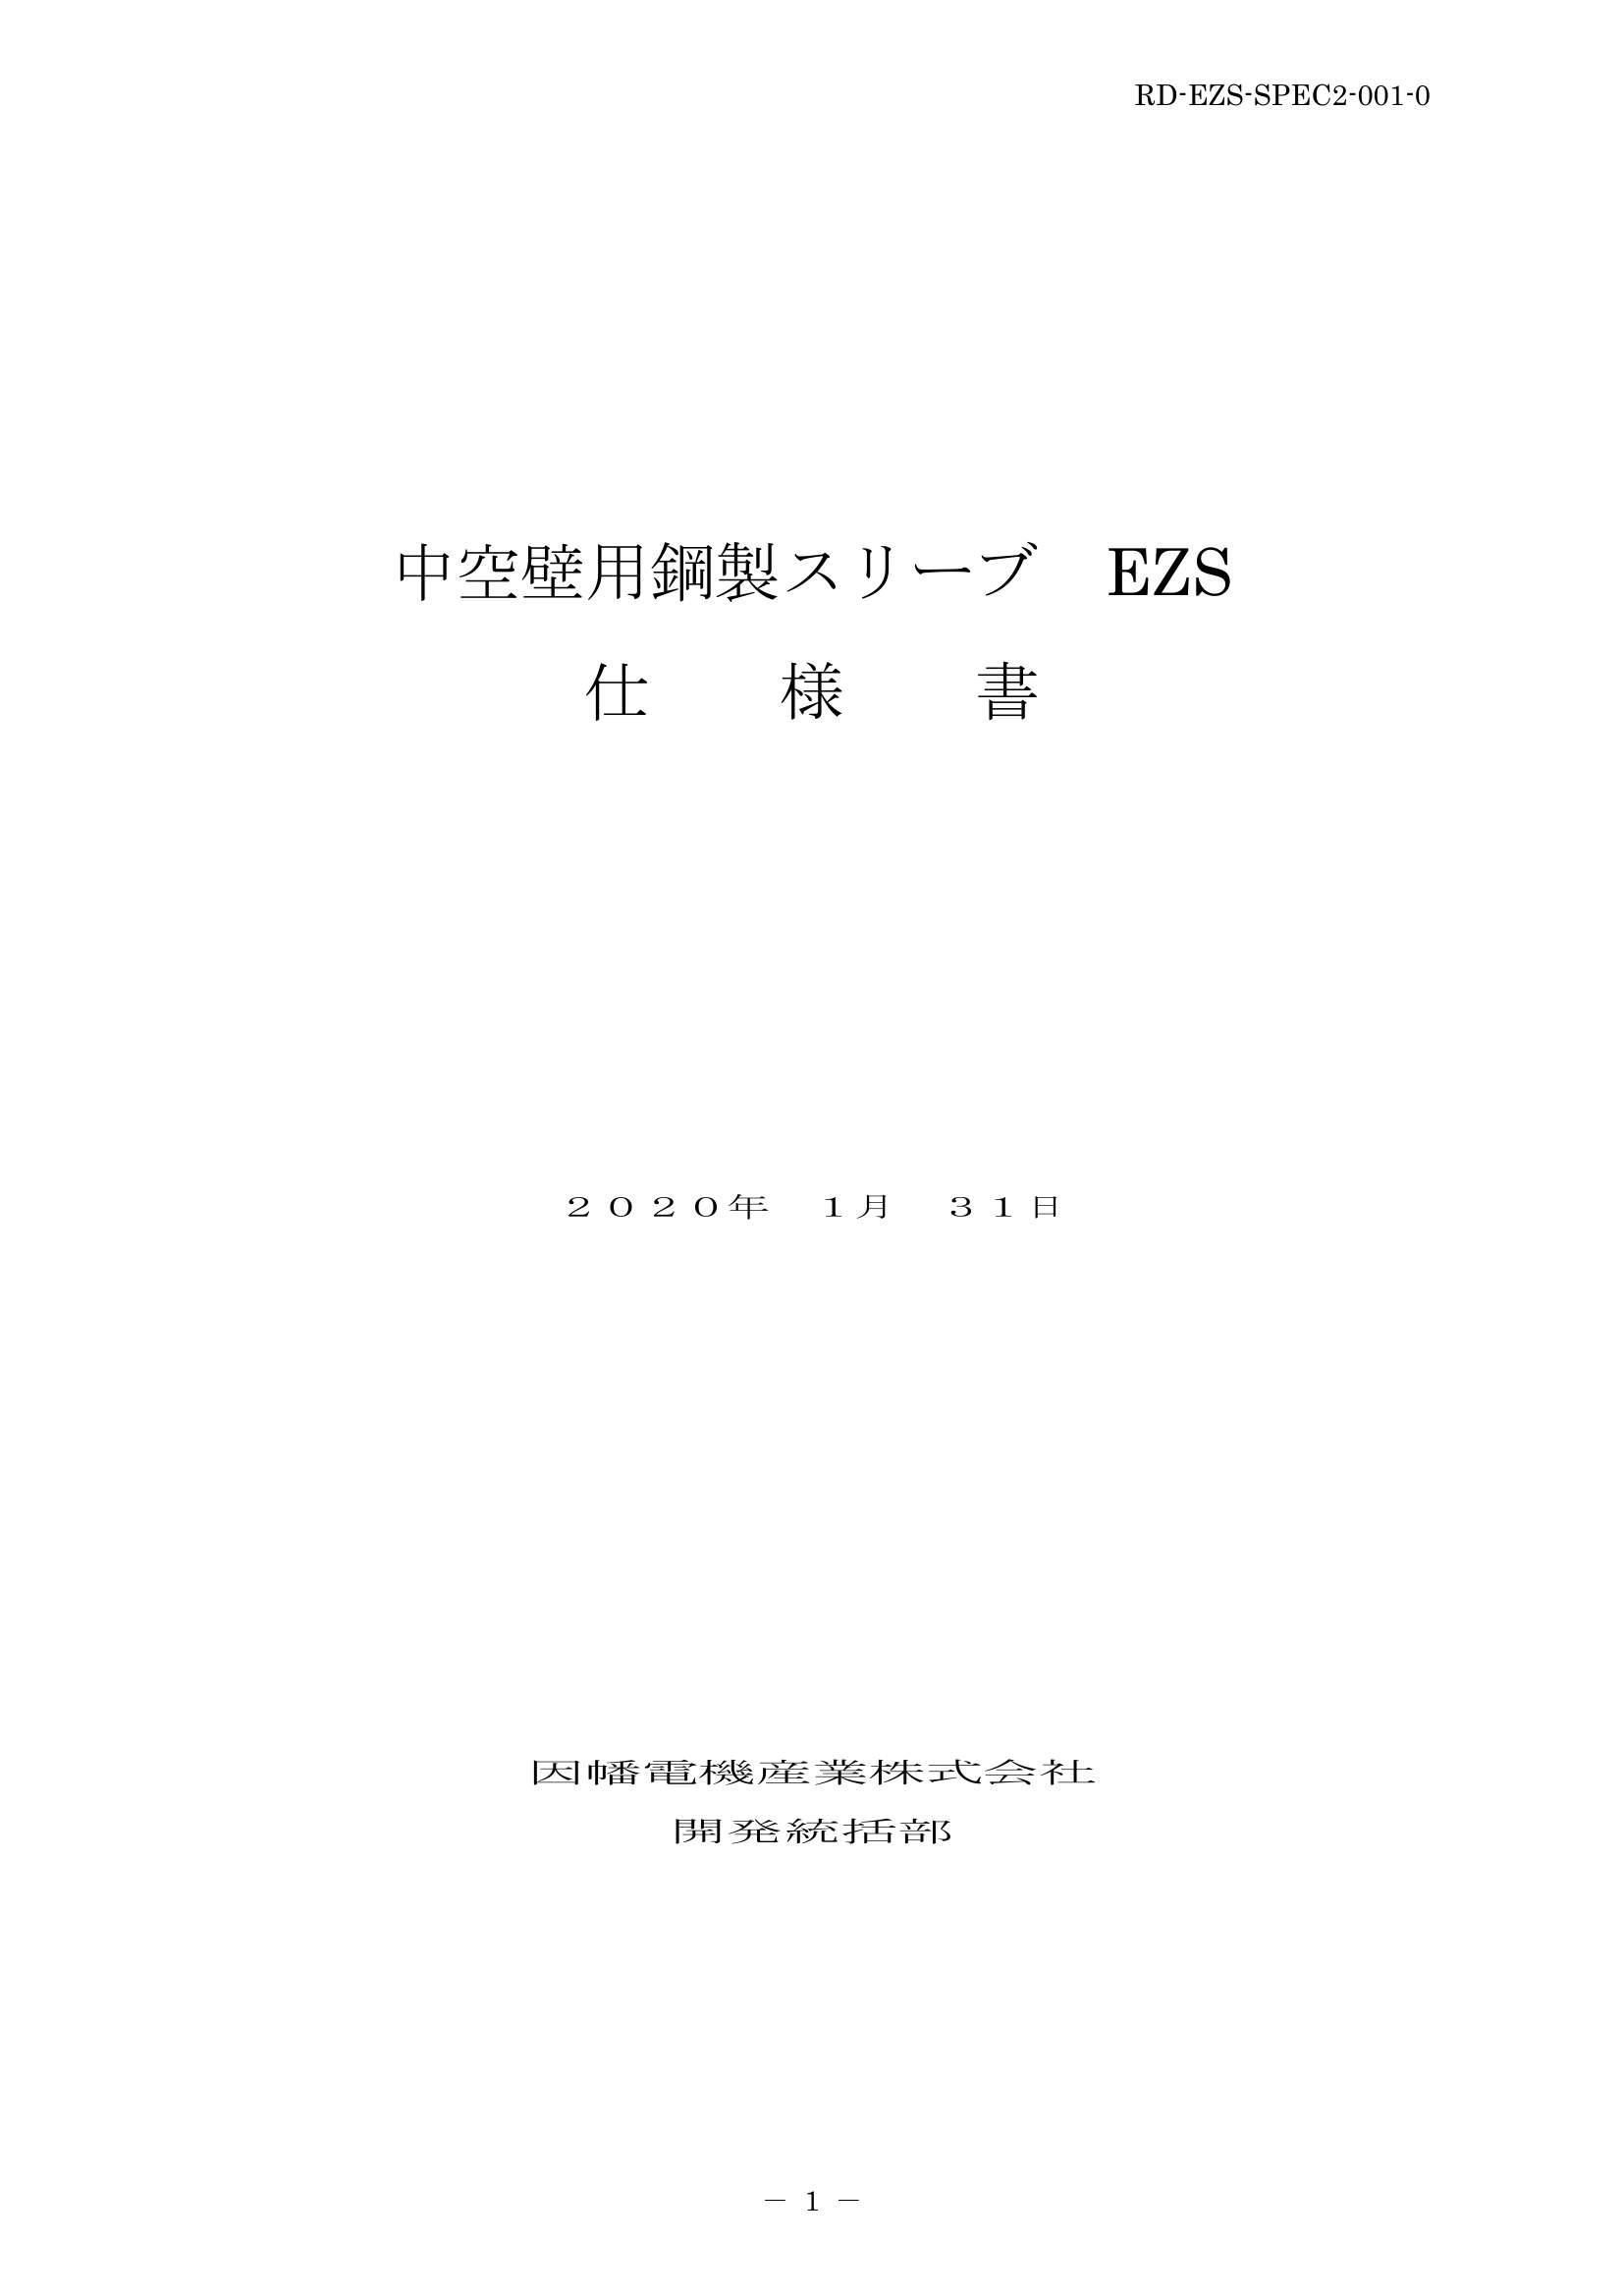 EZS_仕様書_20200131.pdf